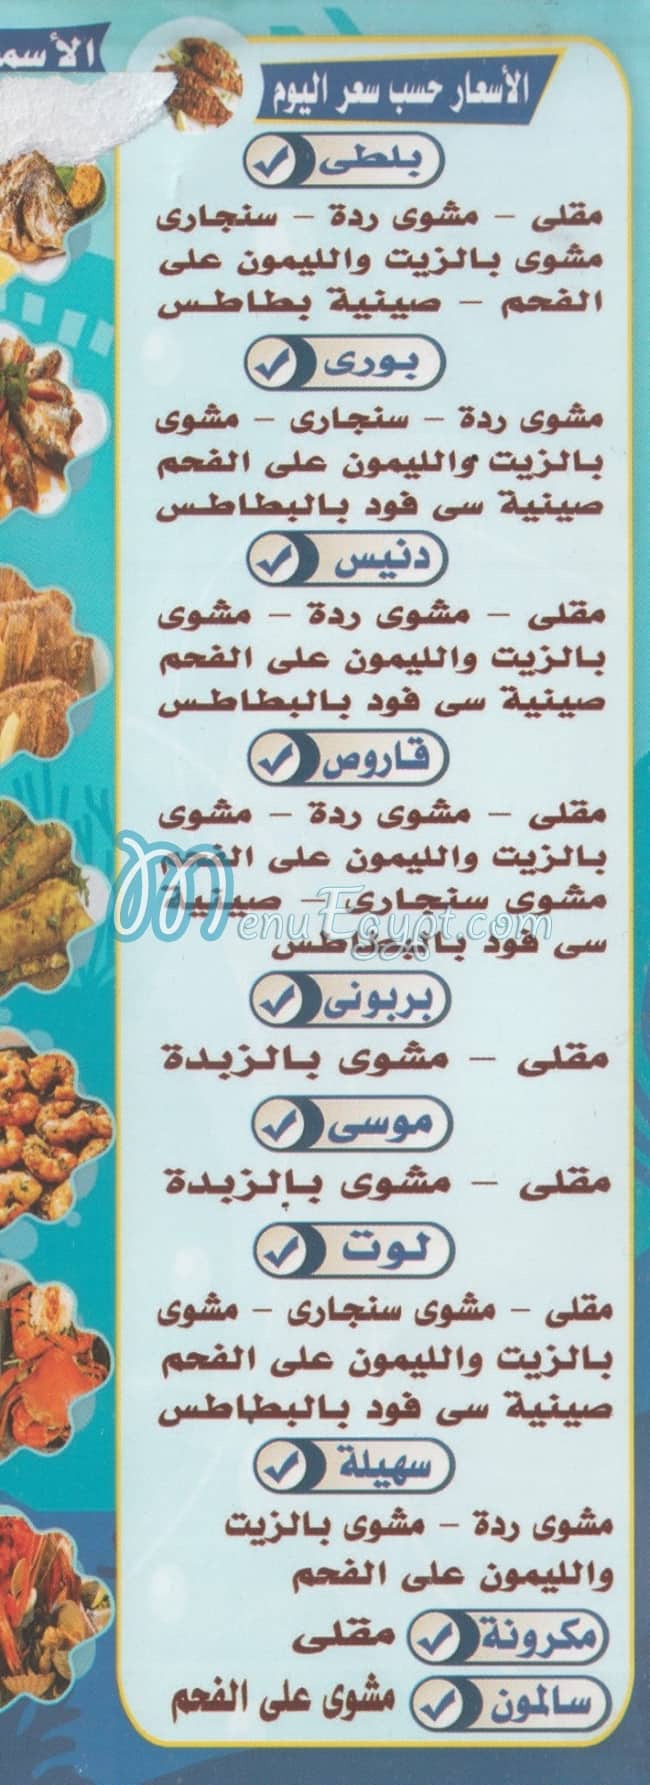 Asmak Al 3ez menu